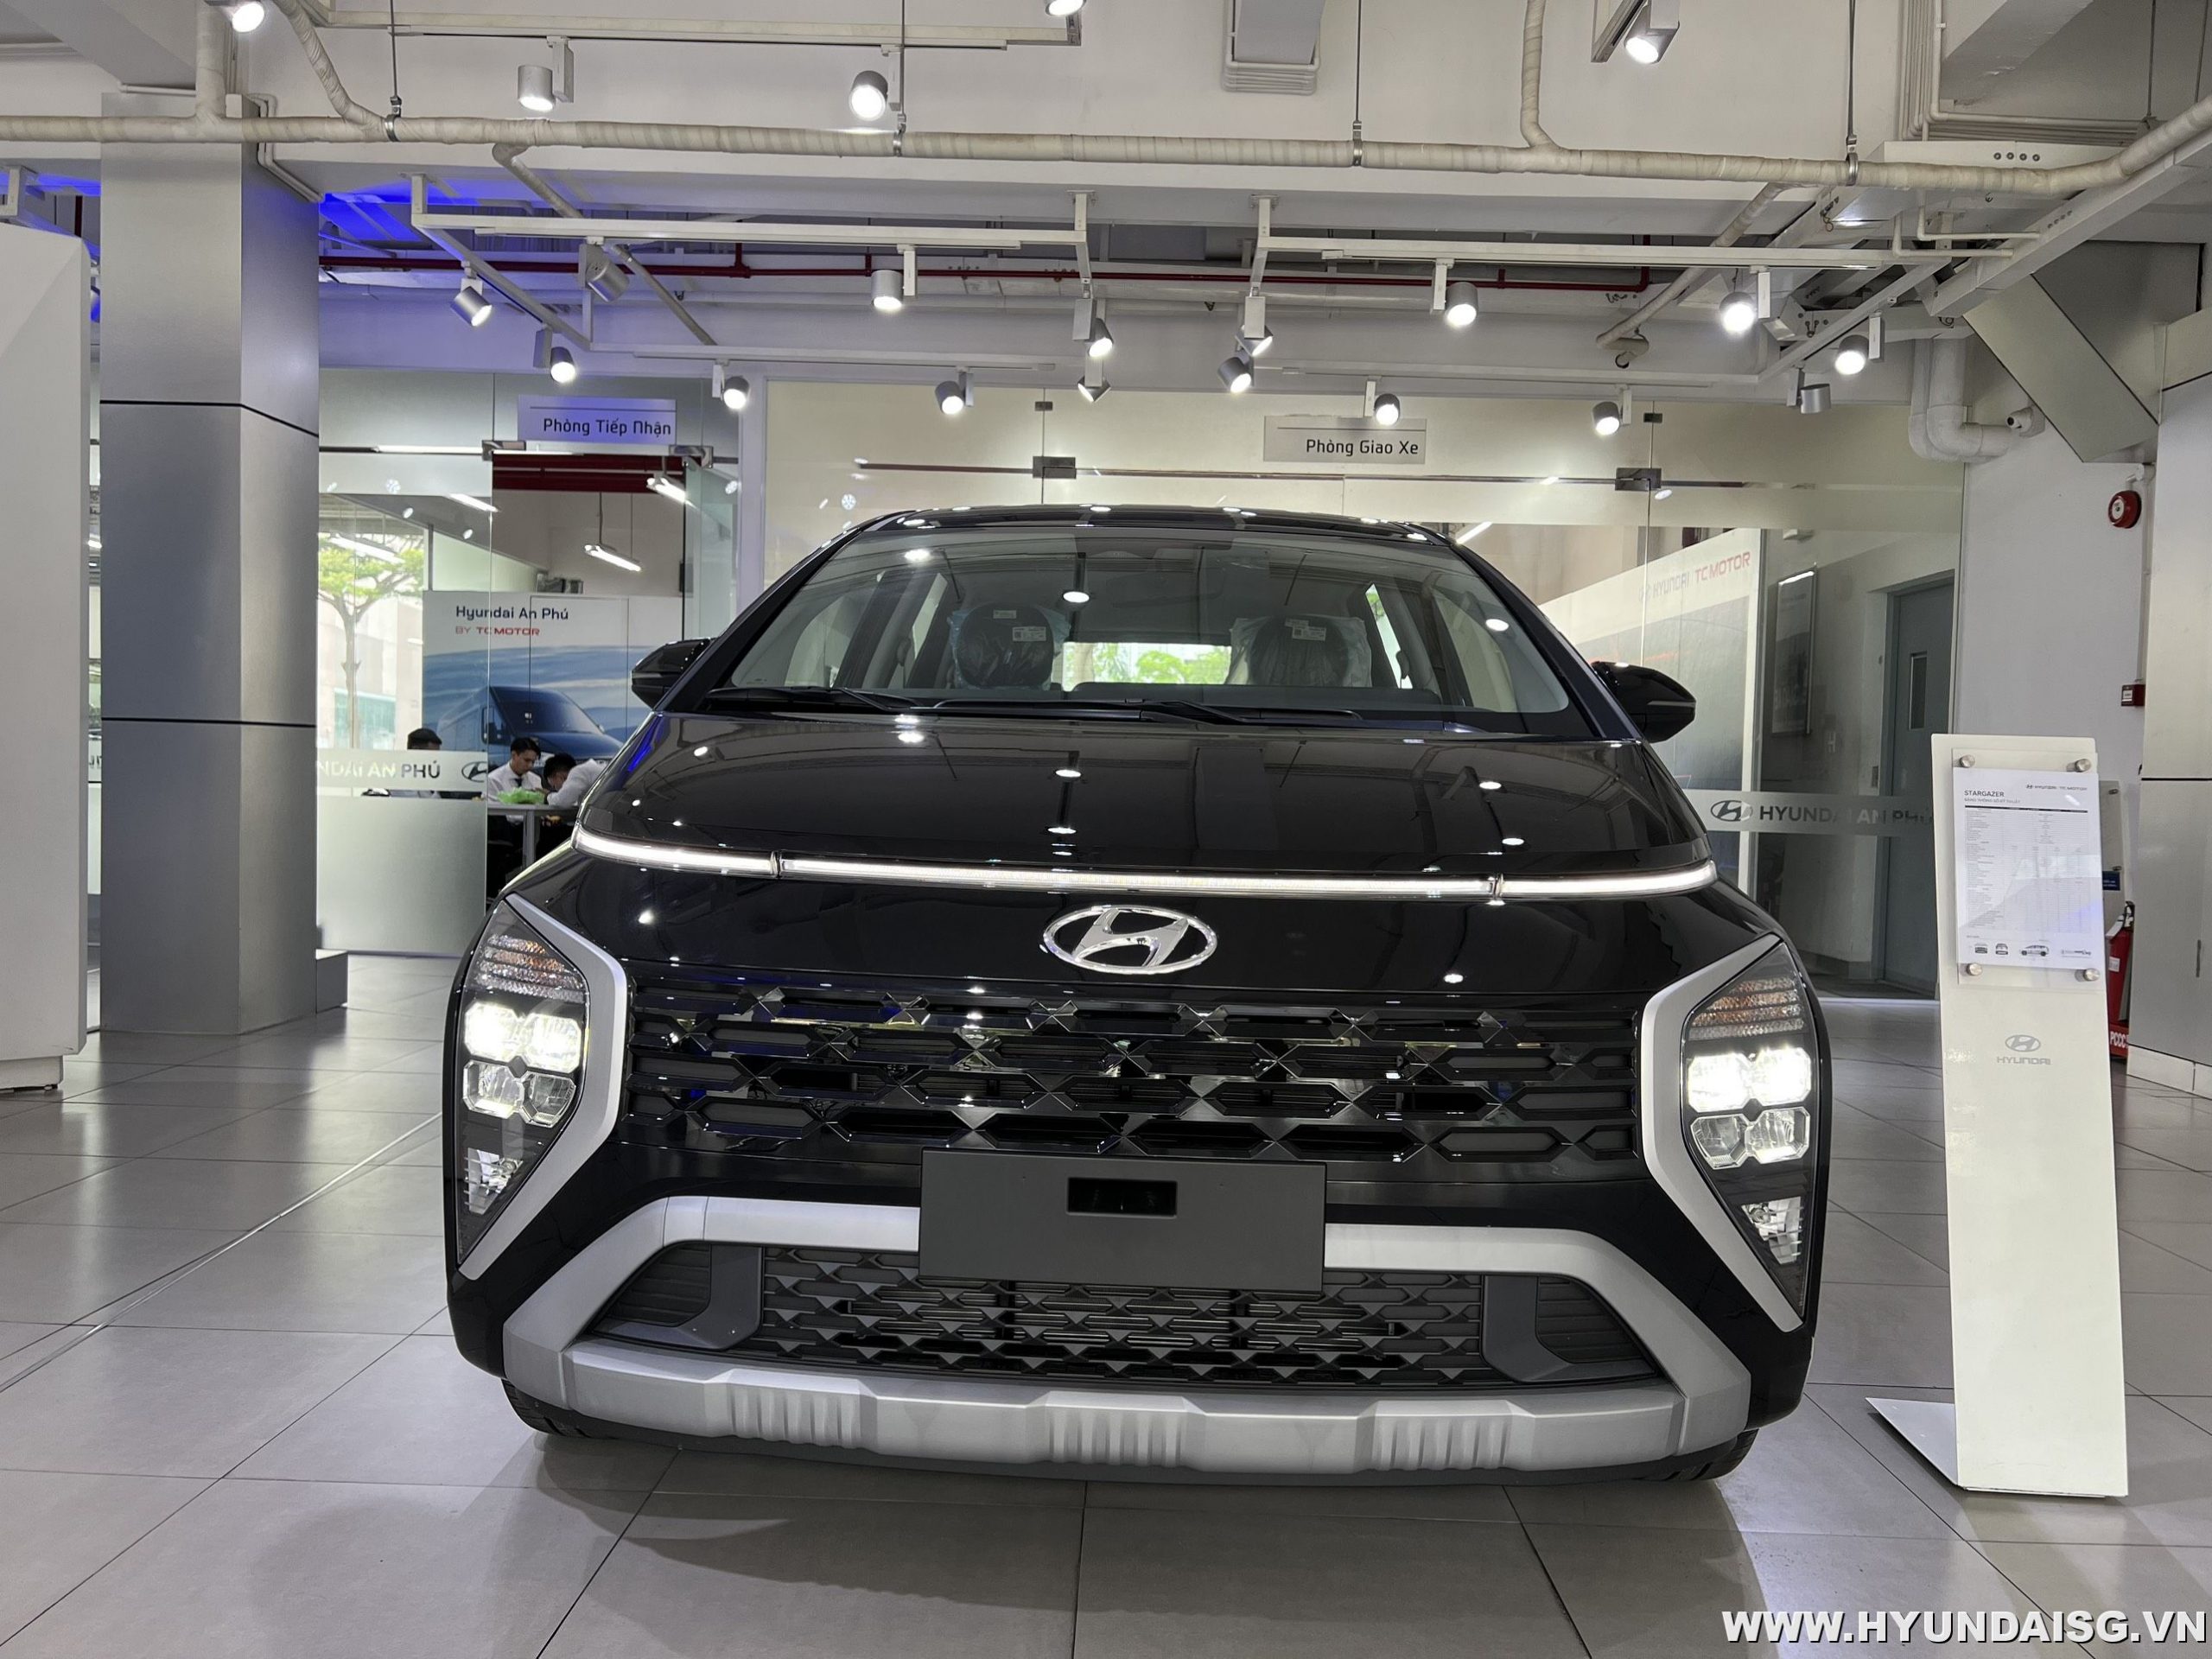 You are currently viewing Bảng giá và ưu đãi xe Hyundai tháng 11/2022